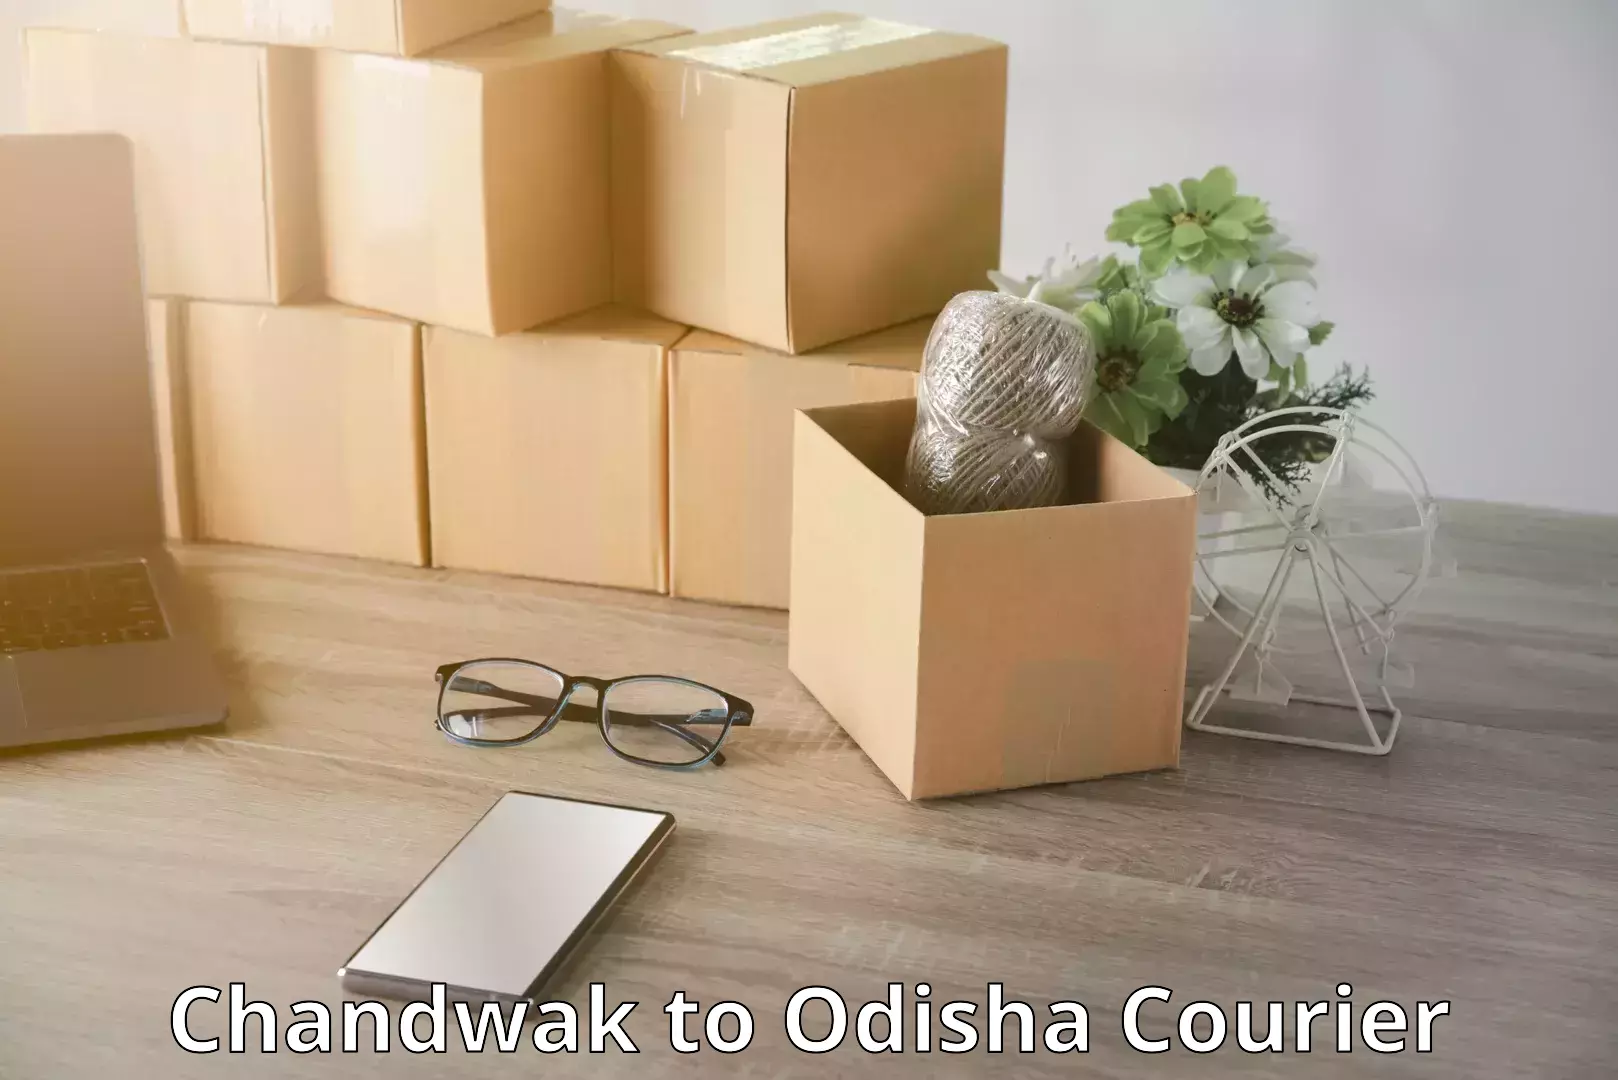 Door-to-door baggage service Chandwak to Odisha